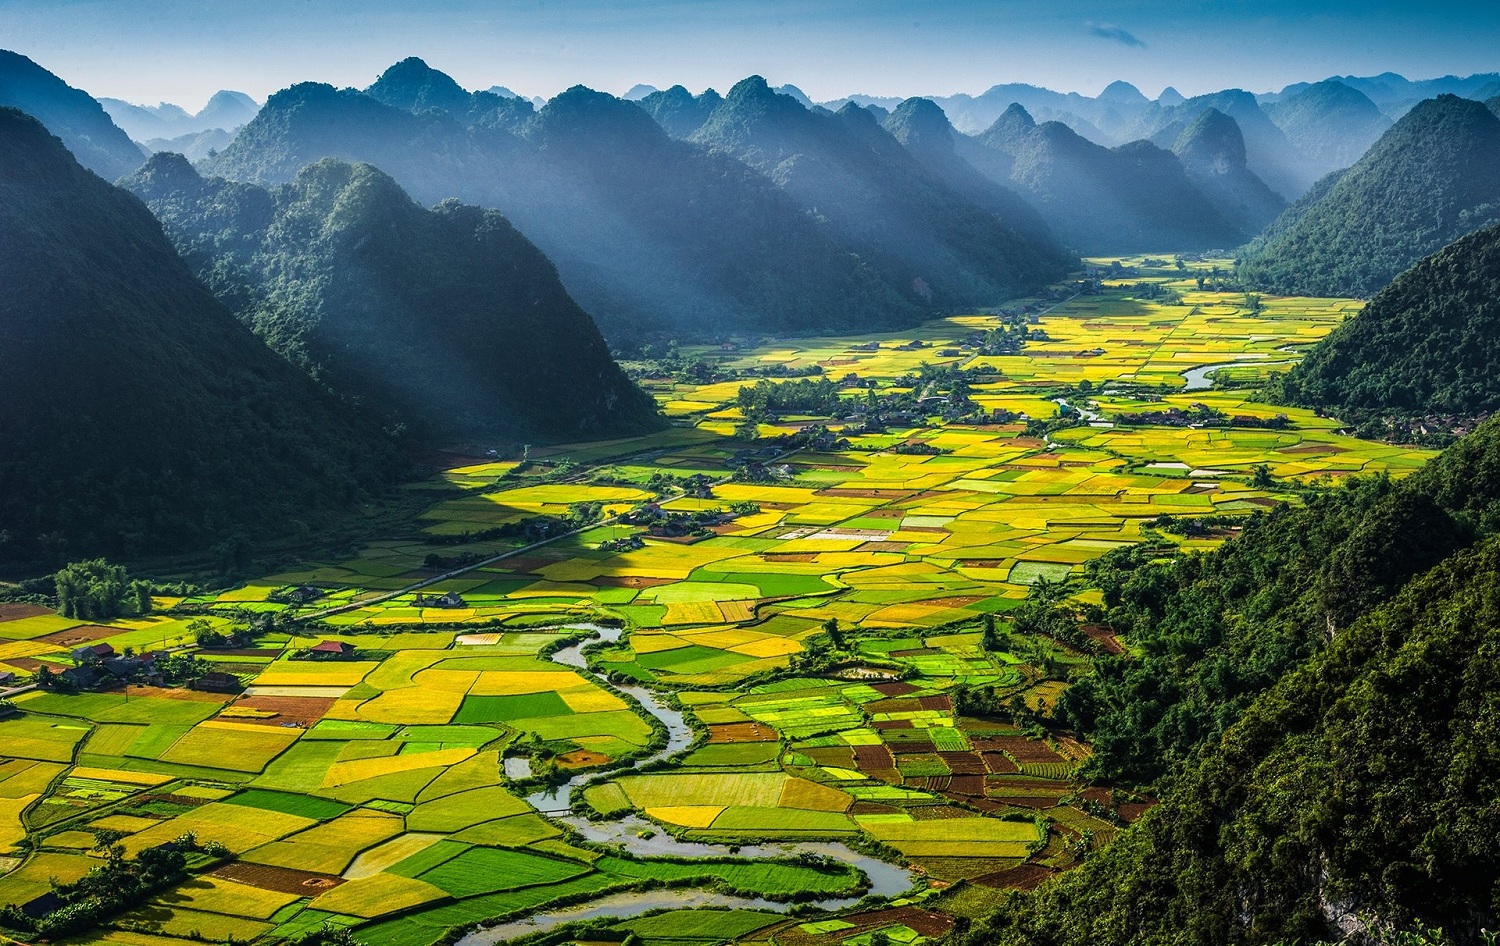 Hình ảnh đẹp: Hình ảnh đẹp chắc chắn sẽ làm bạn bị thu hút và muốn xem nhiều hơn. Việt Nam có rất nhiều hình ảnh đẹp từ thiên nhiên, con người đến các kiến trúc lịch sử đặc sắc. Hãy để những hình ảnh đẹp này tạo niềm cảm hứng và thăng hoa trong lòng bạn.